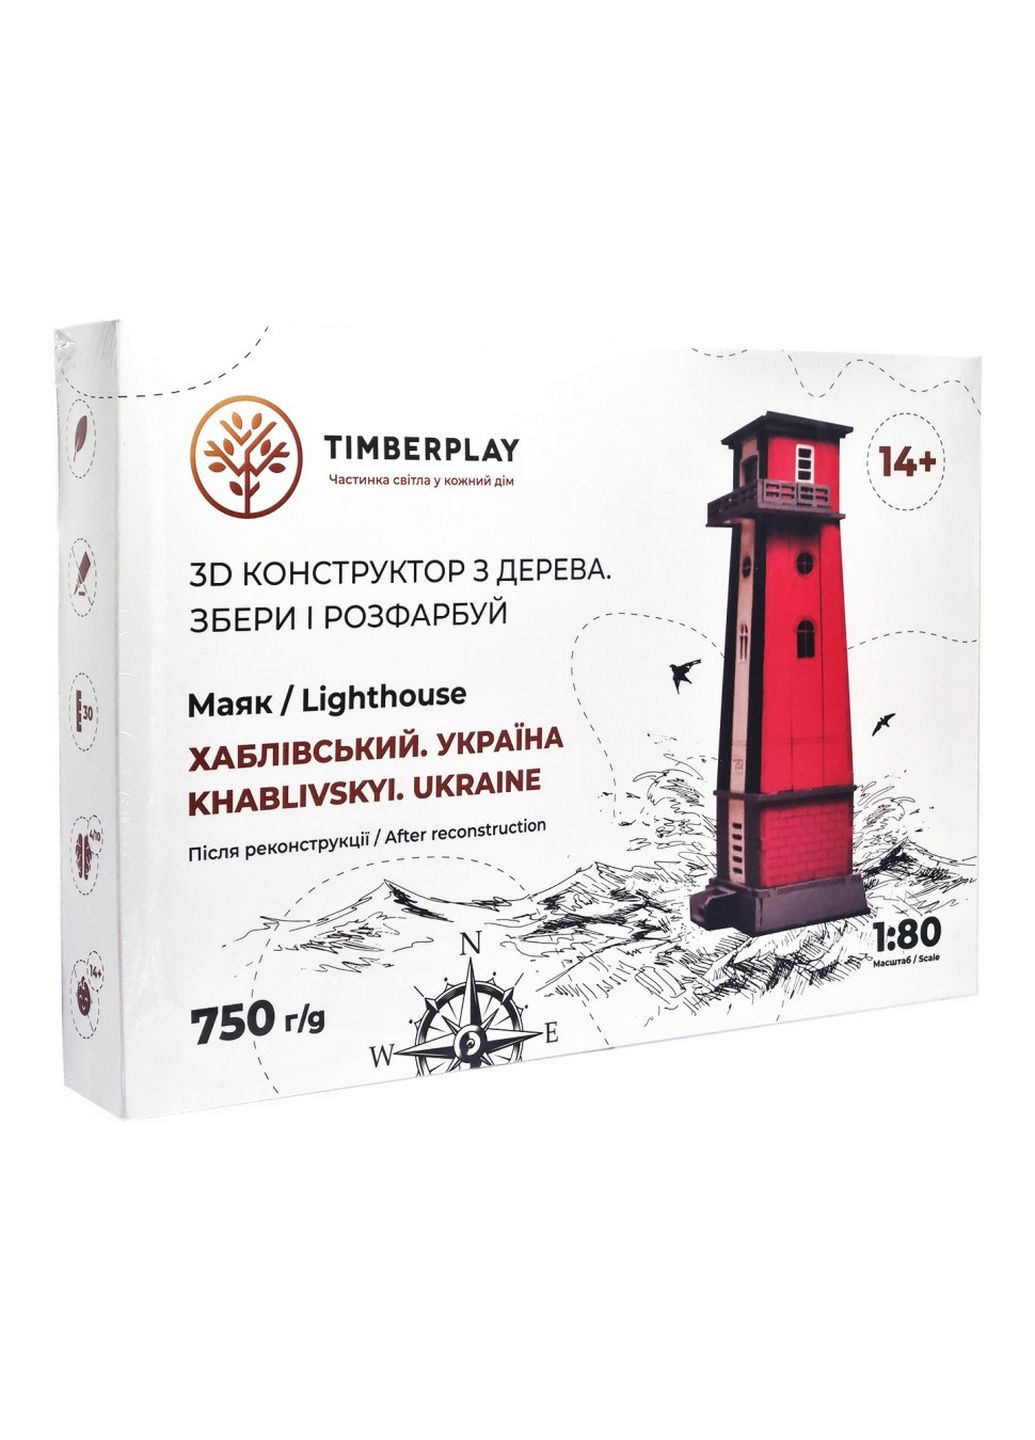 Конструктор деревянный 3D маяк Хабловский после реконструкции (Украина, Херсонская область), 54 детали Timberplay (288187131)